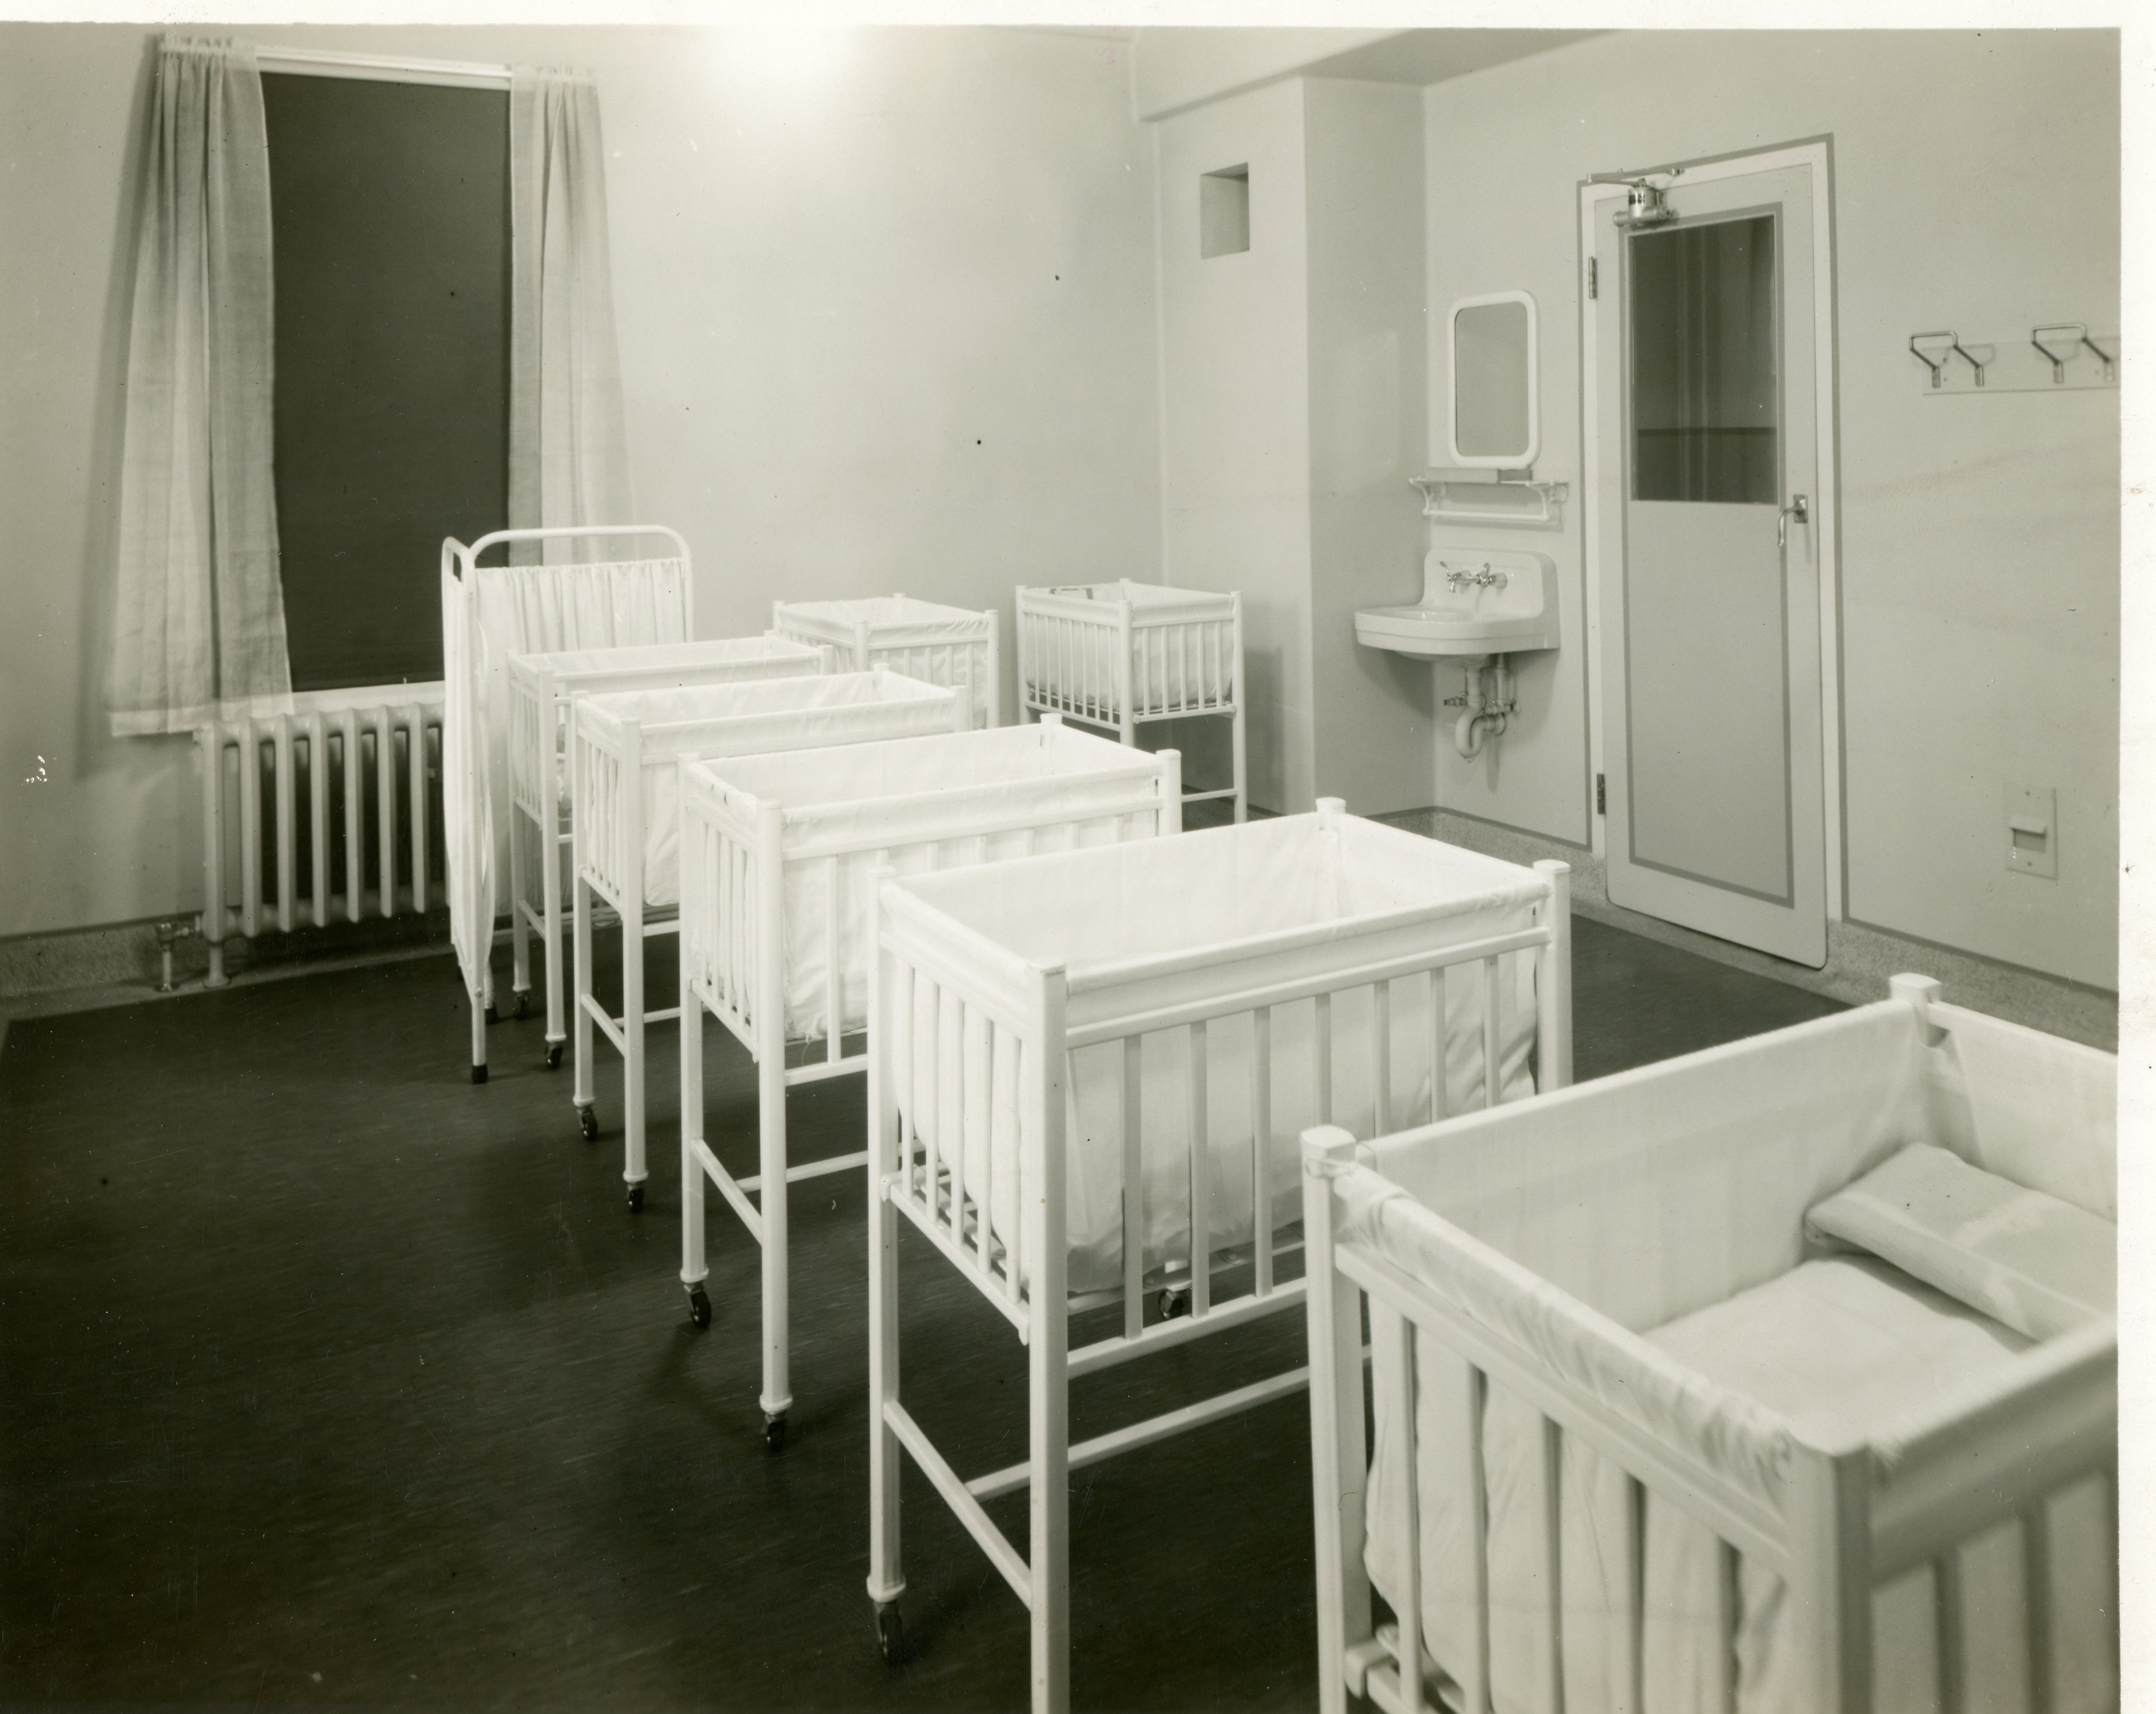 Lits de bébé nombreux dans une pièce claire et ouverte dans un hôpital, avec lavabo et miroir dans le coin près de la porte dans une photo en noir et blanc.